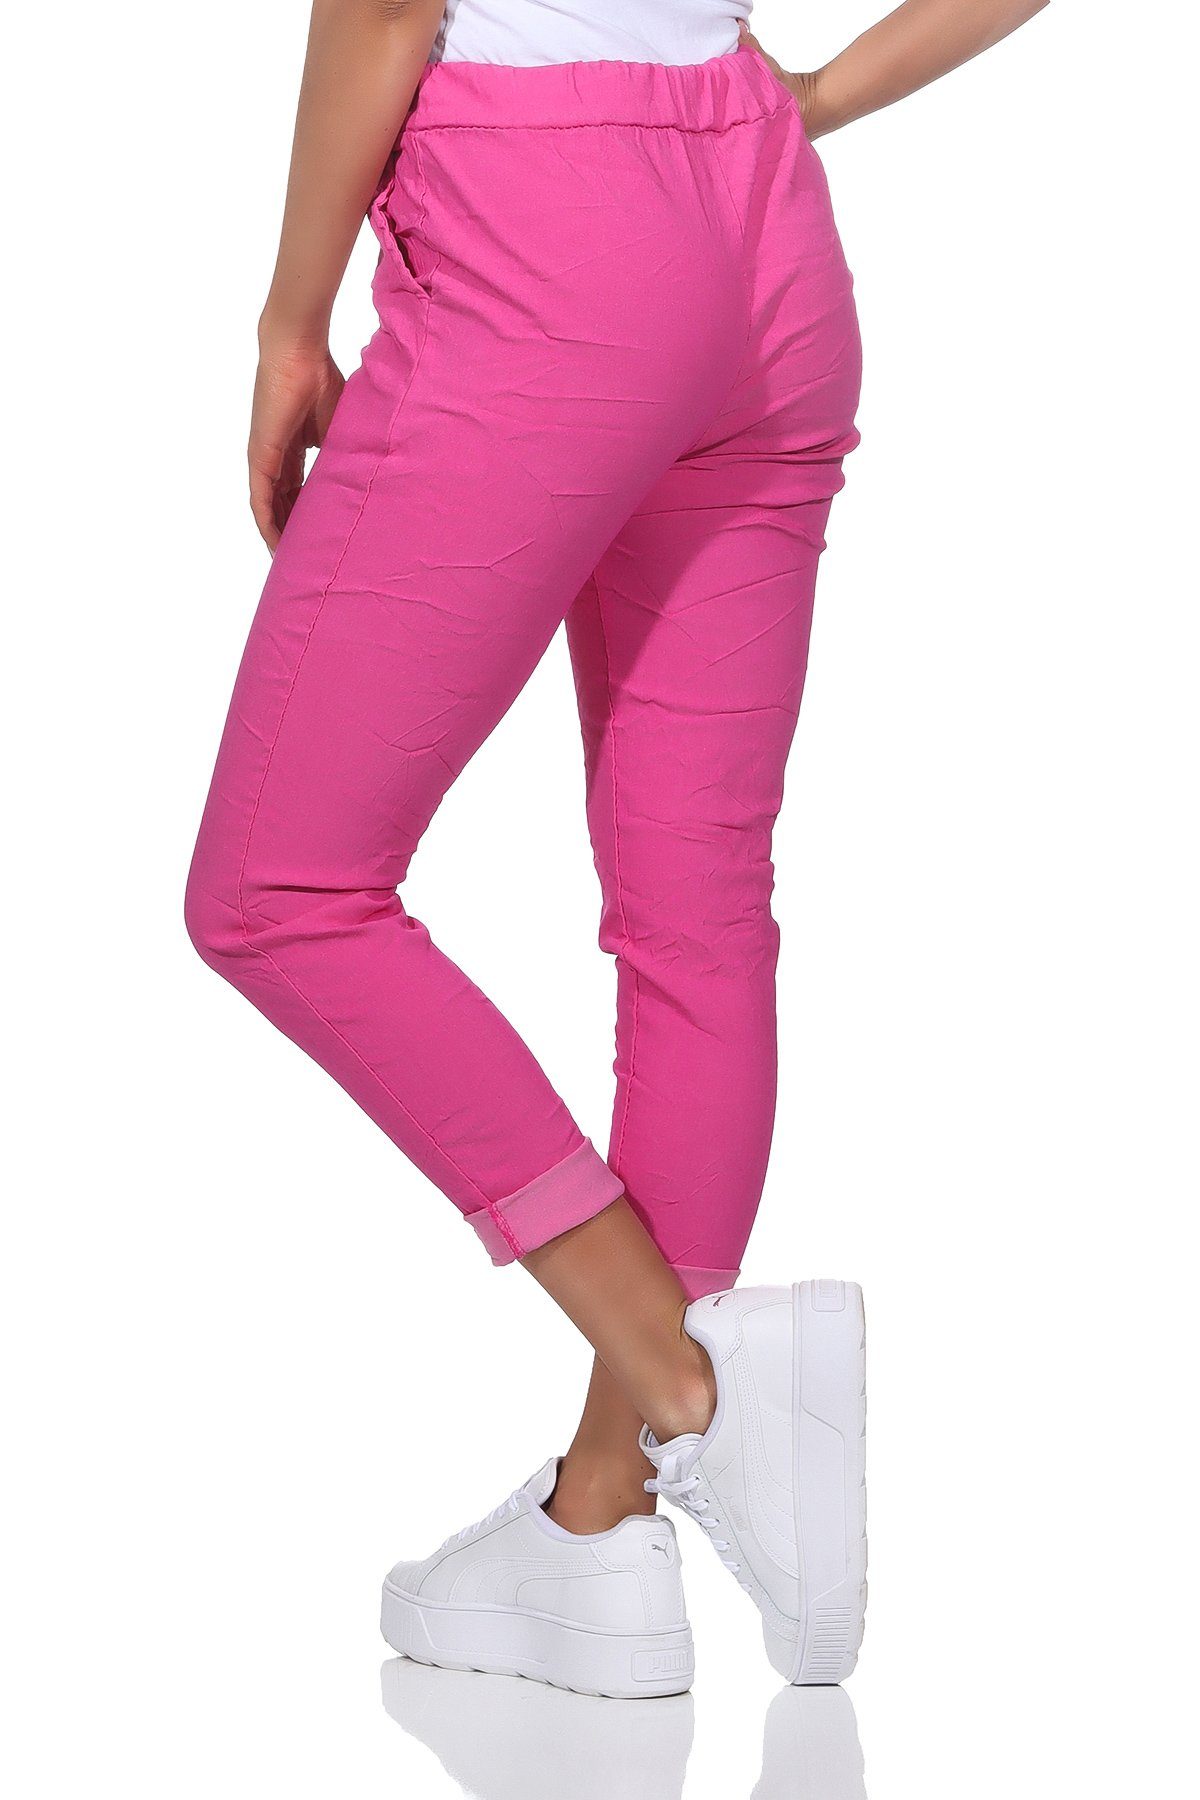 auch modischen großen Schlupfhose Aurela Körpergröße Stretch-Jeans Damen Sommerhose Sommerfarben, max. Größen in leichte Pink erhältlich, Schlupfhose Damenmode Chinohose 1,69m in